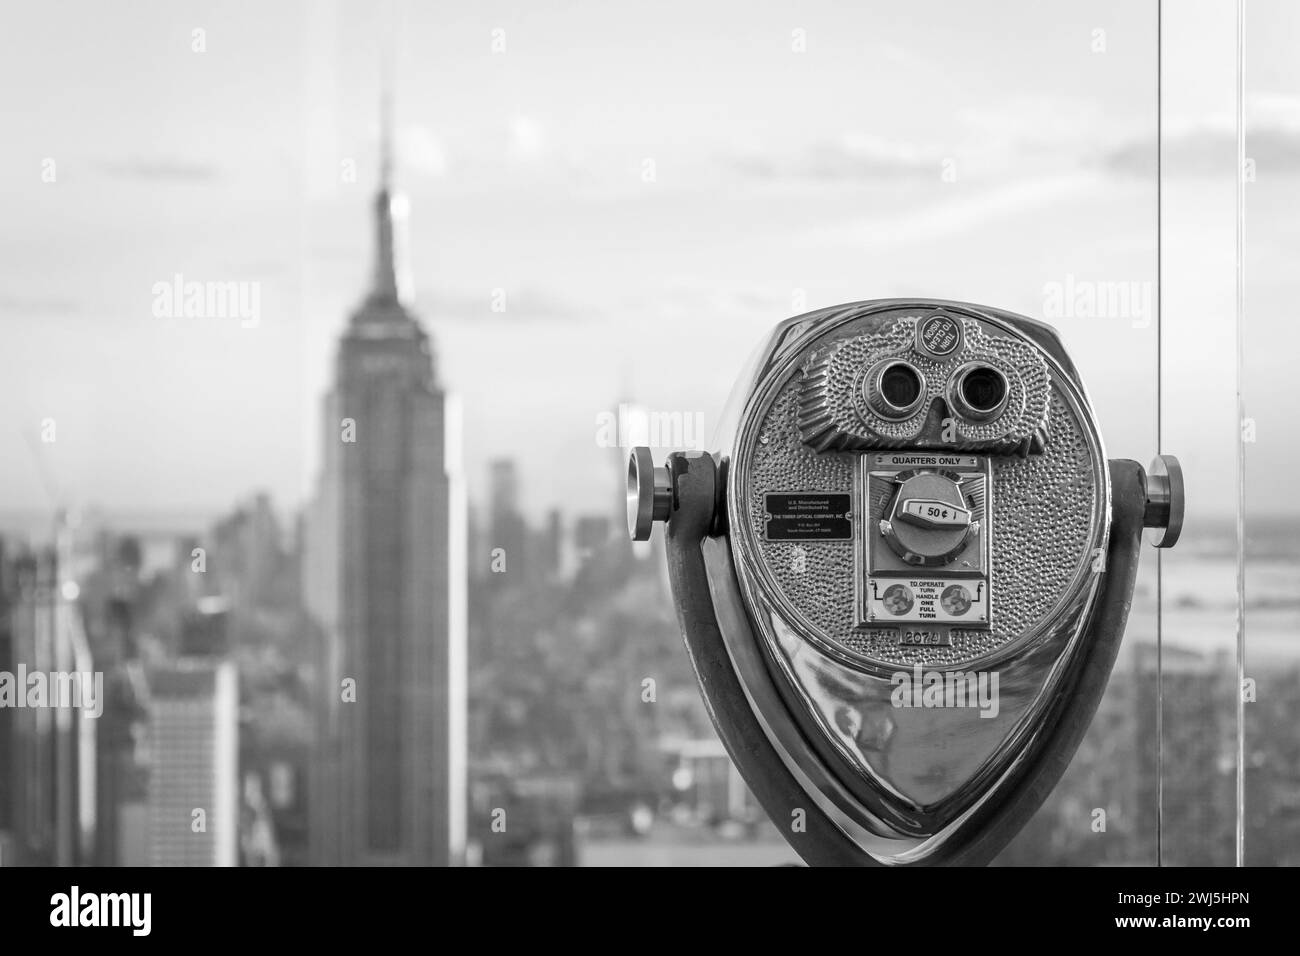 Prismáticos mirando puntos de interés en el centro de Manhattan, la ciudad de Nueva York, fotografía en blanco y negro Foto de stock